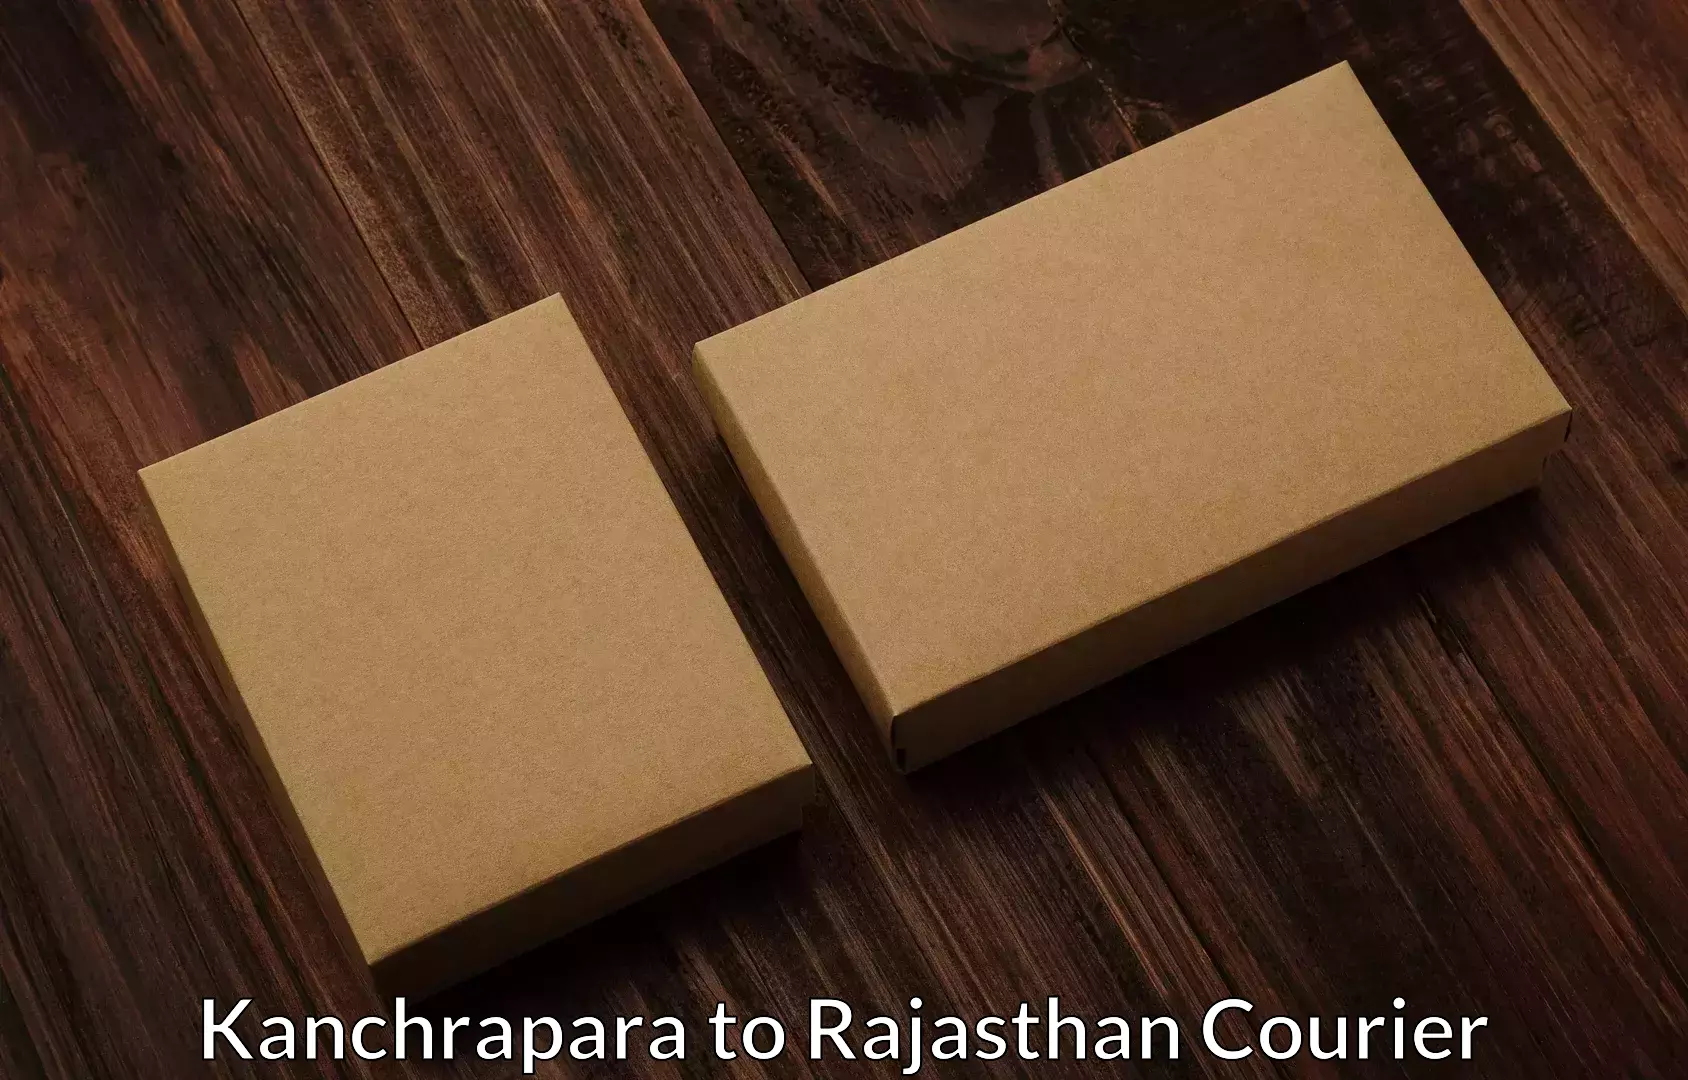 Furniture transport professionals Kanchrapara to Lohawat